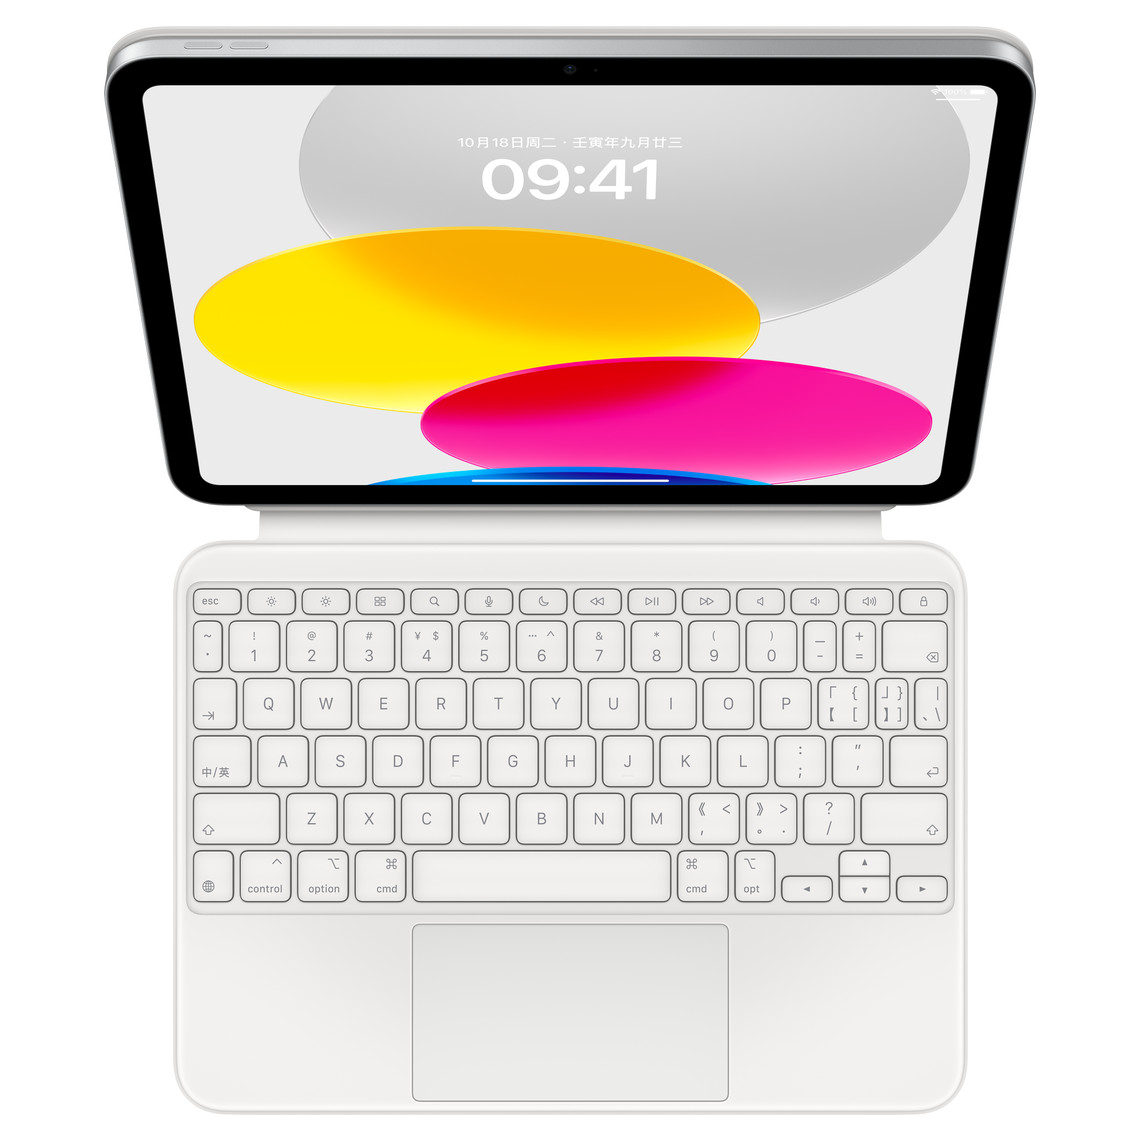 连接妙控键盘双面夹的 iPad 水平放置时的俯视图。显示彩色圆形图案的屏幕。